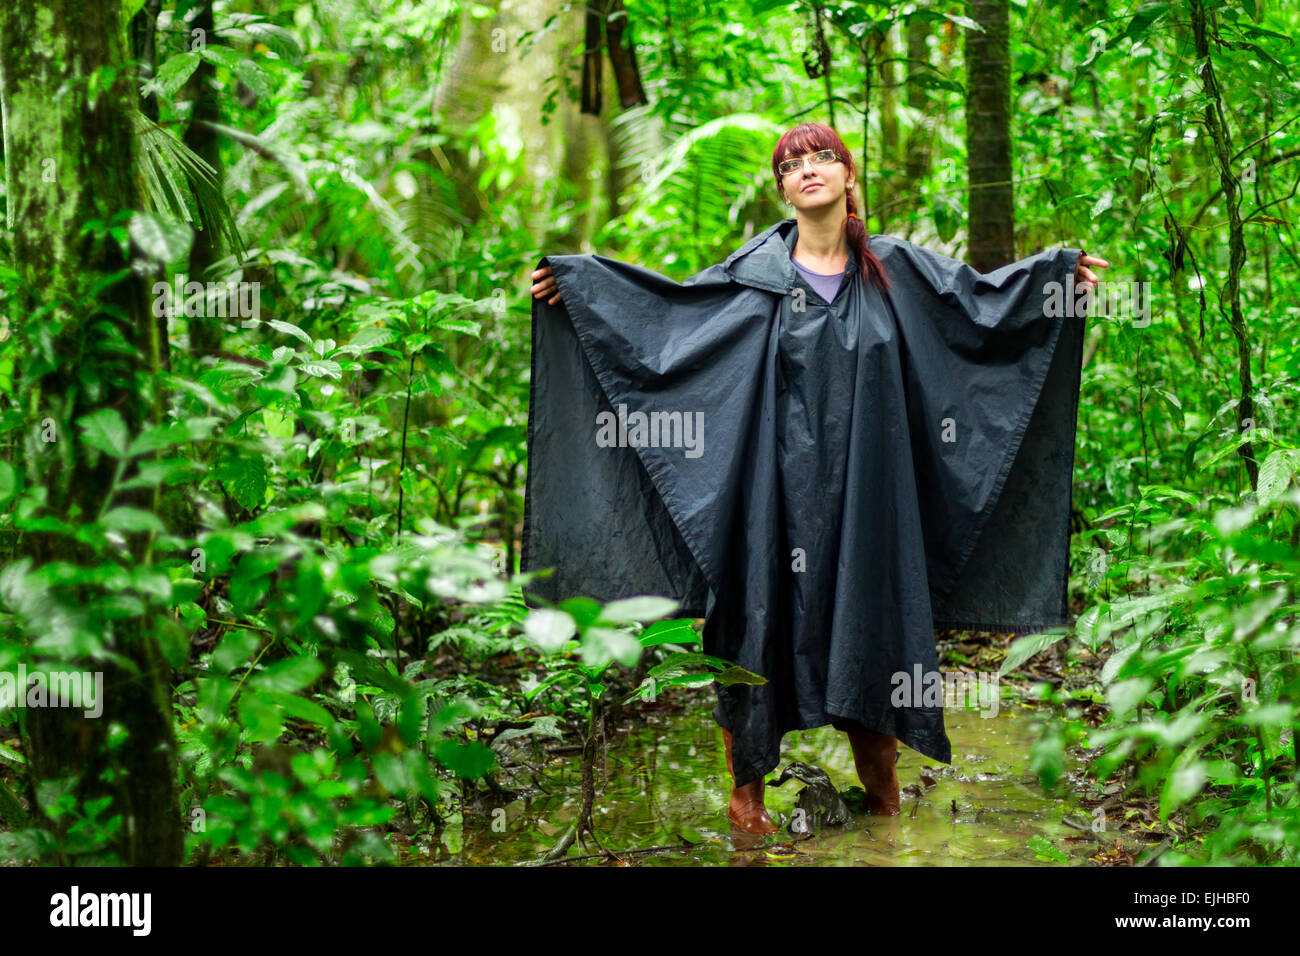 Touristische Frau in Amazonas Dschungel zeigt typische Ausrüstung und Bekleidung für diese Umgebungen Regenponcho und Gummistiefel Stockfoto